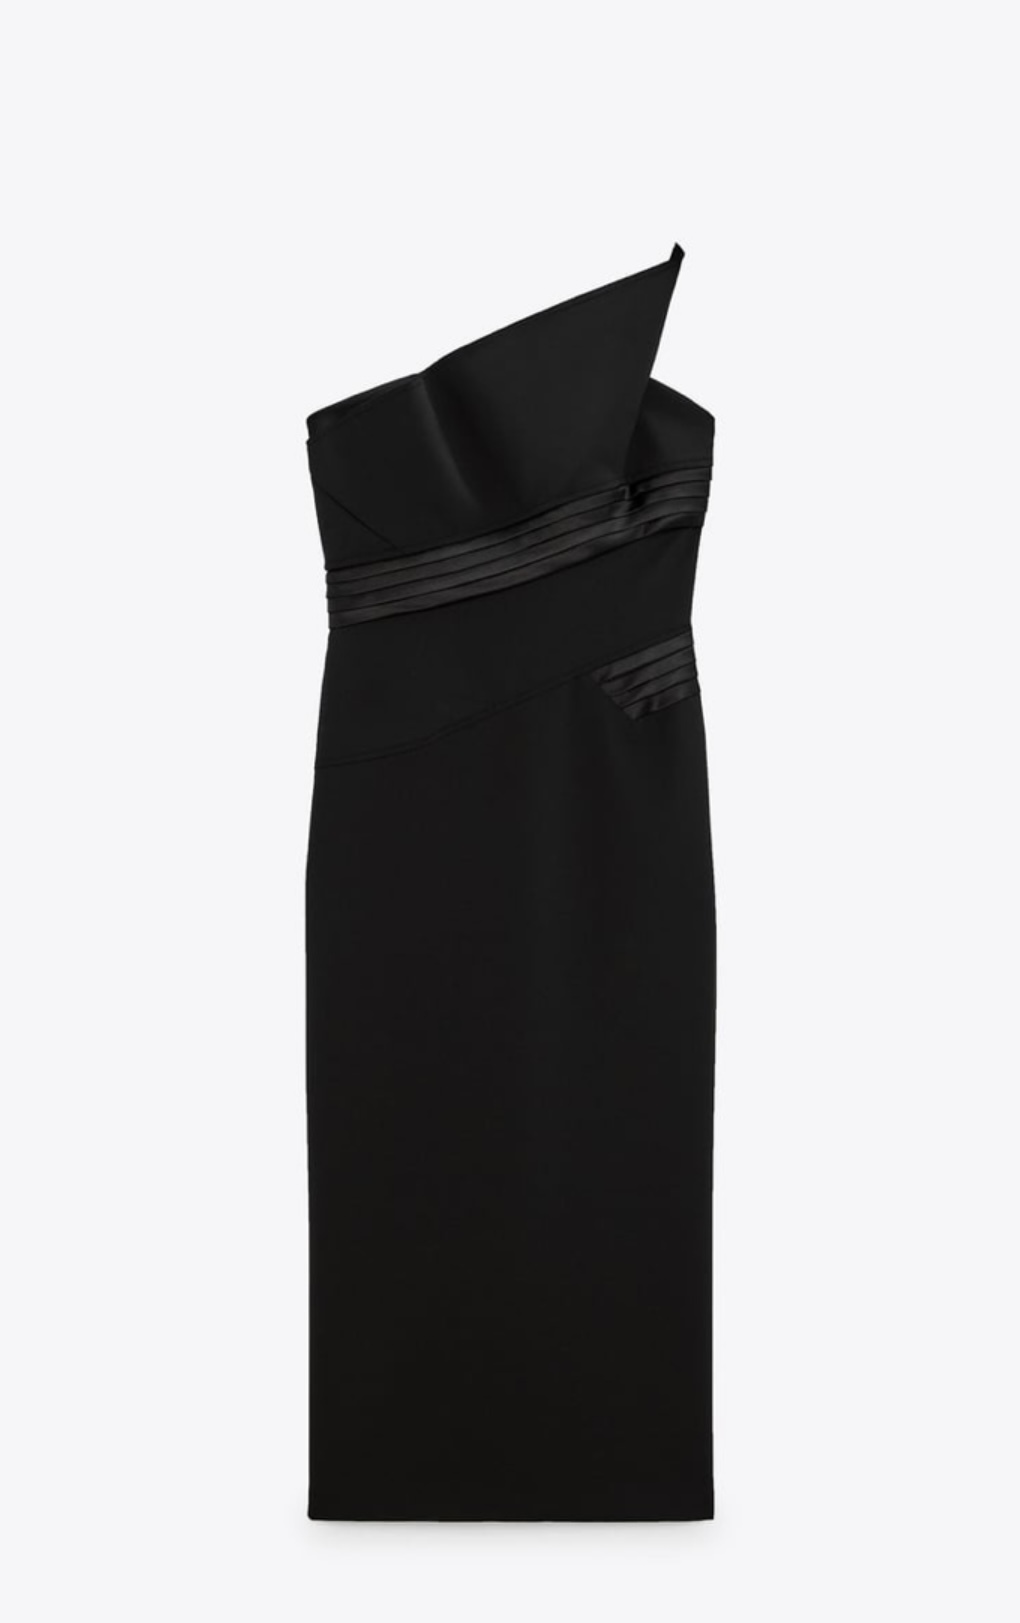 Vestido negro de lana con escote palabra de honor. Zara (79,95 euros).